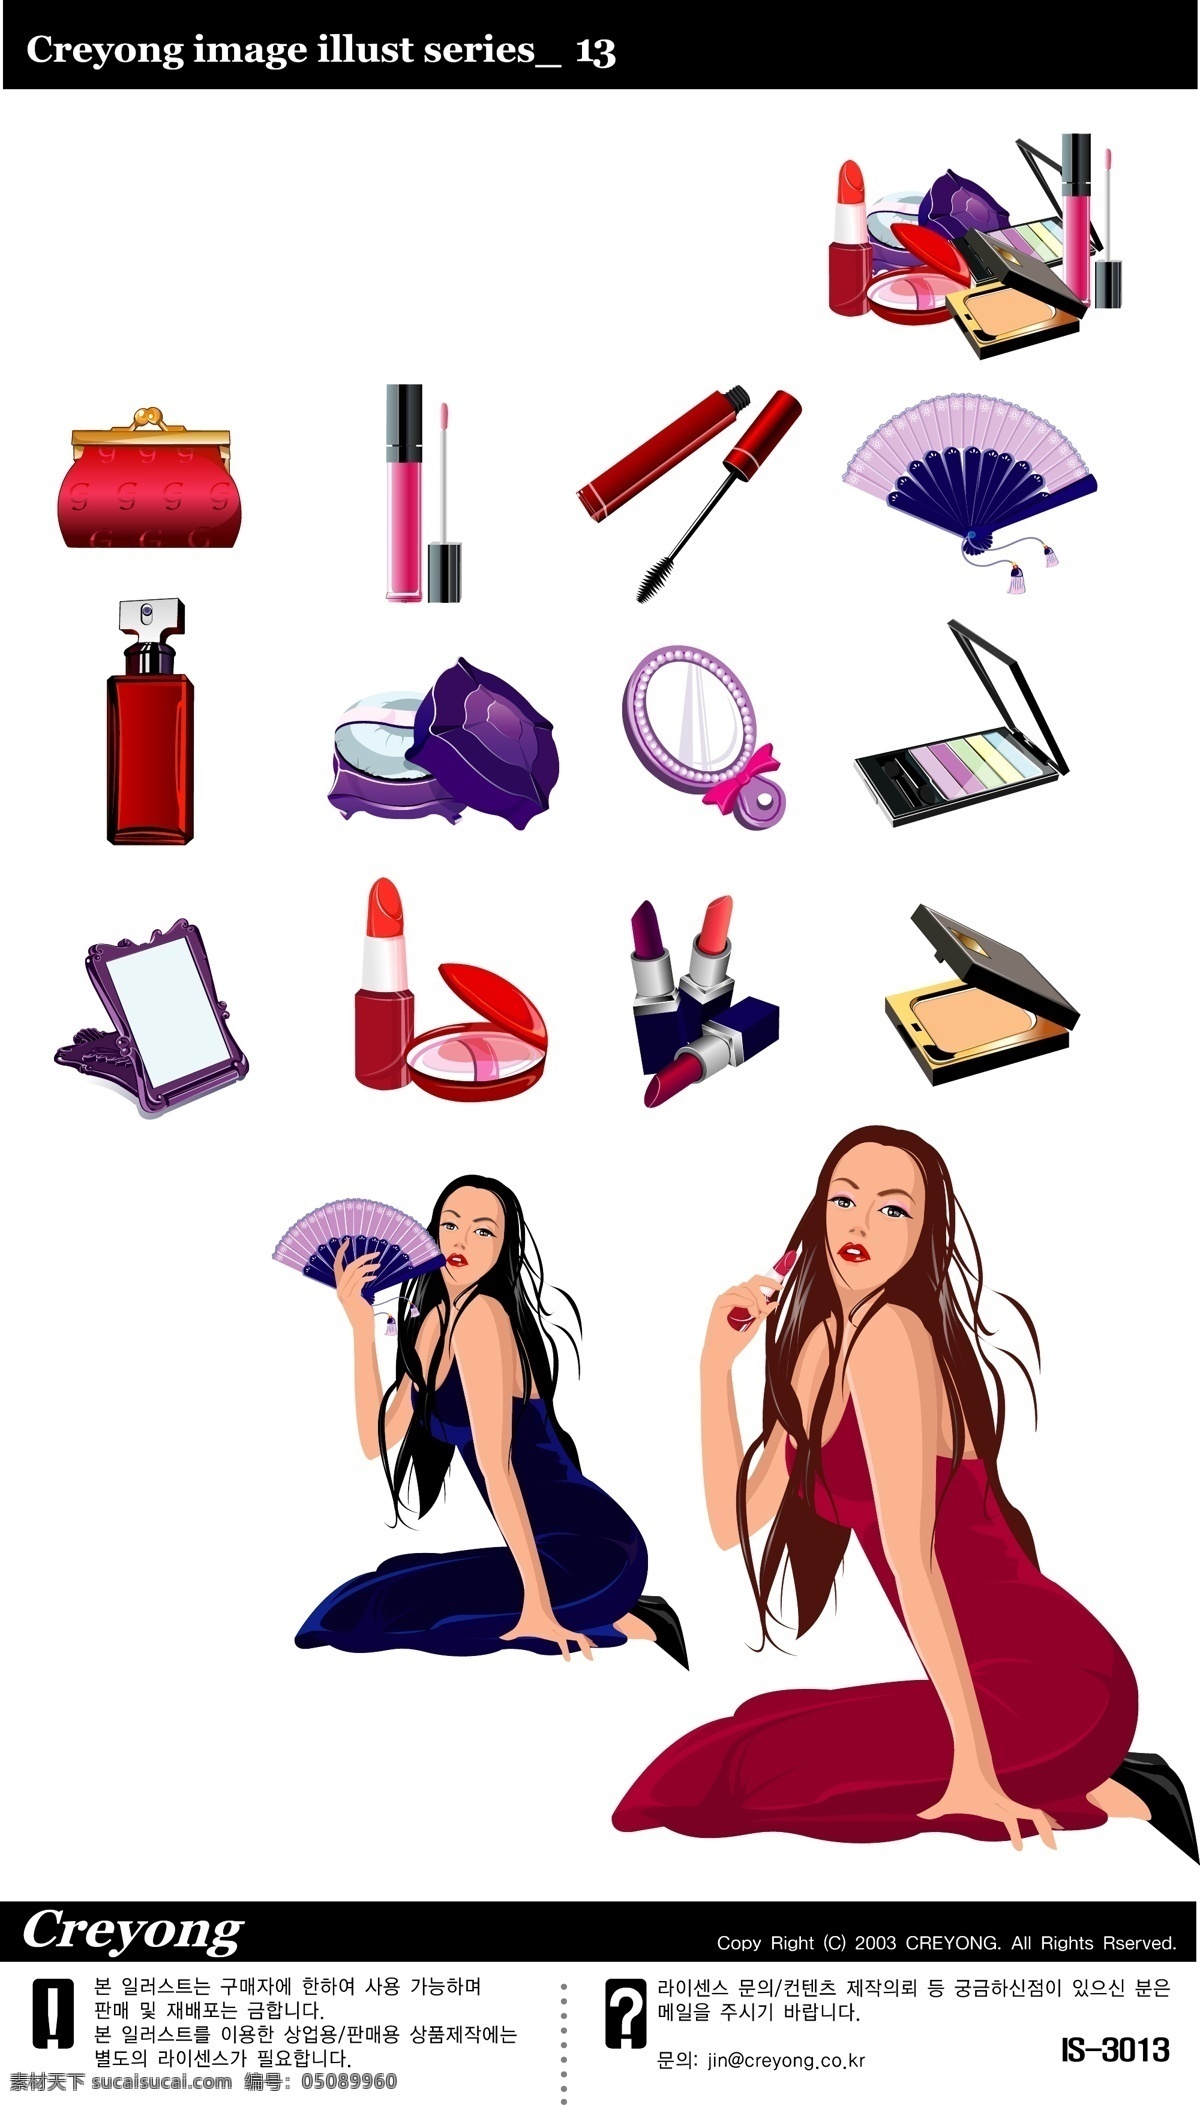 时尚女性 卡通矢量素材 时尚 女性 化妆品 香水 镜子 矢量 卡通设计